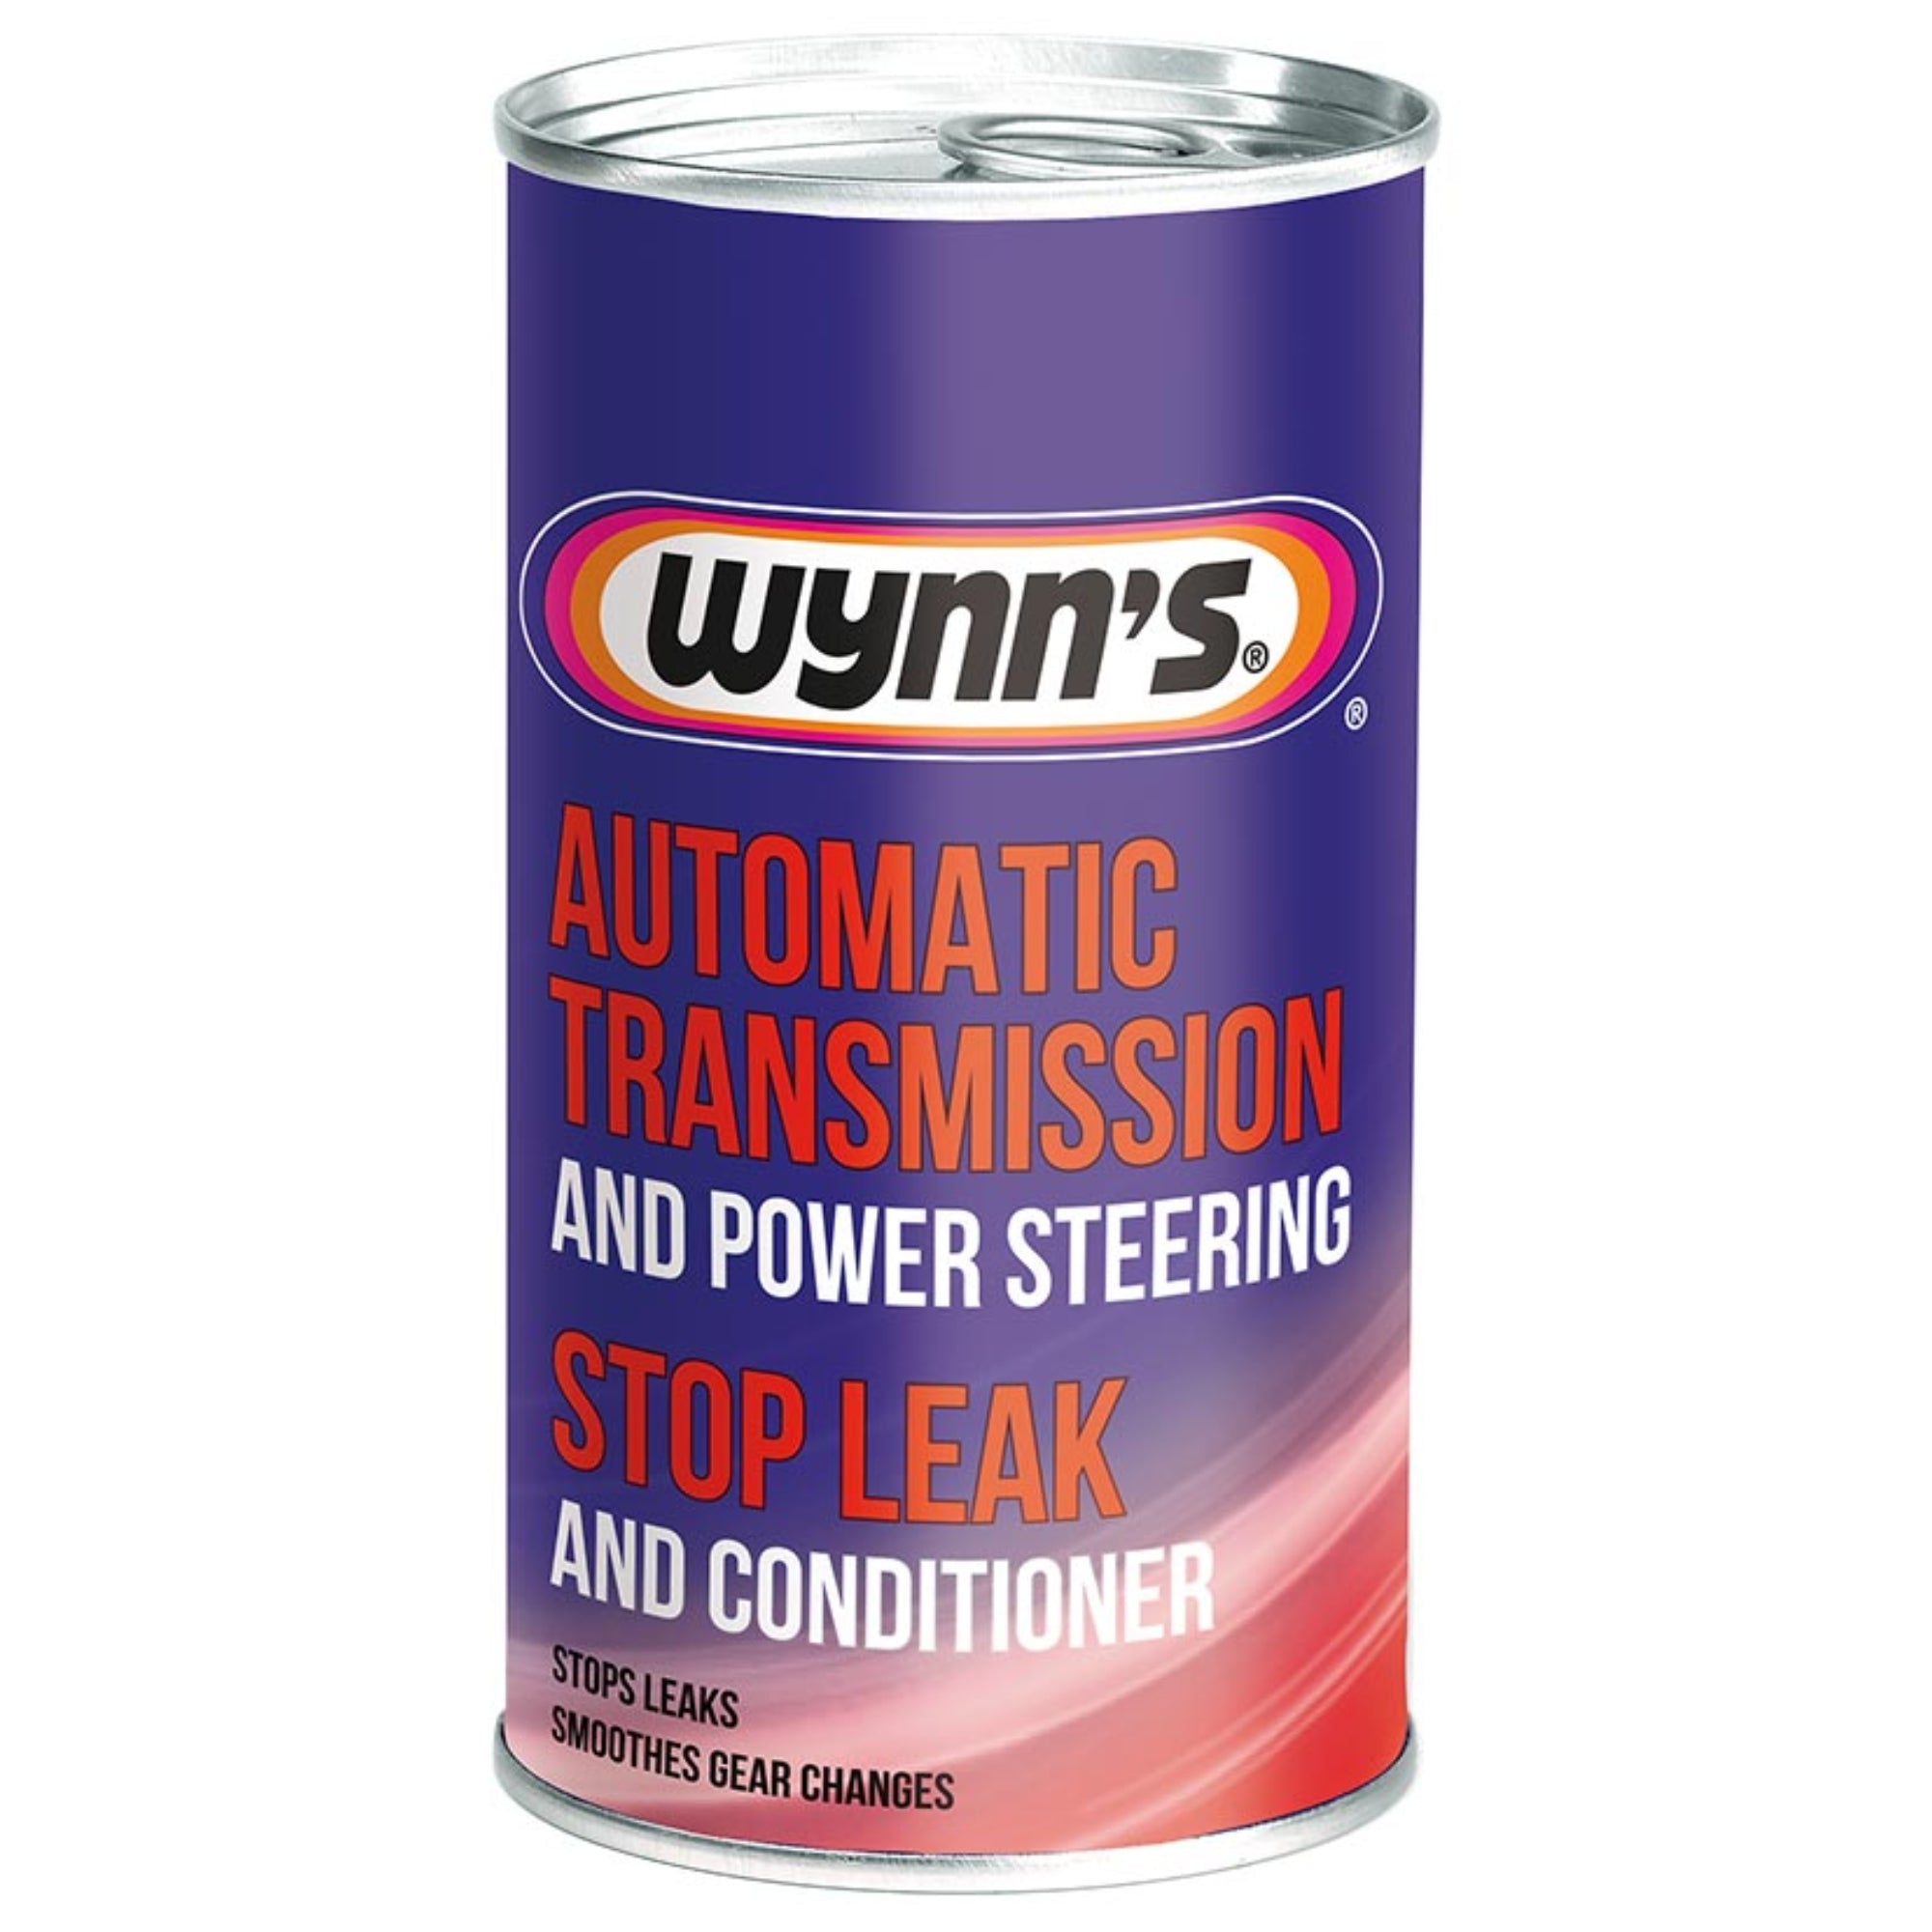 Wynn's Diesel EGR 3 200 ml